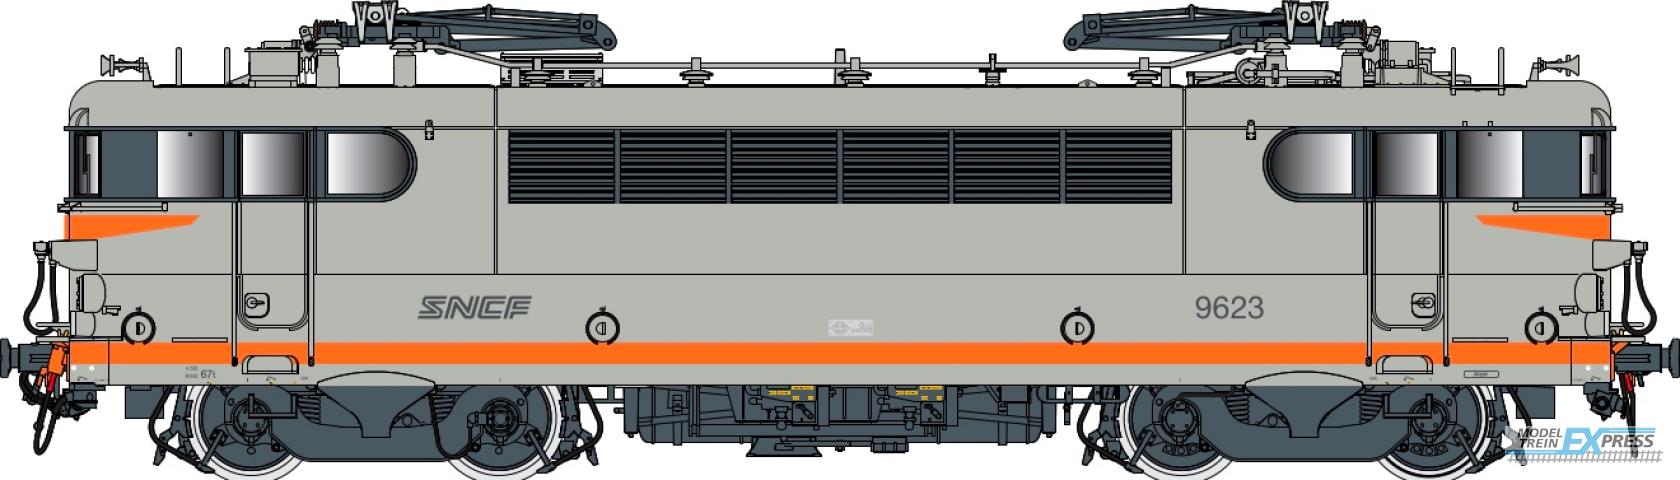 LS Models 10220S BB 9600, grijs/oranje, noedels logo  /  Ep. V  /  SNCF  /  HO  /  DC SOUND  /  1 P.